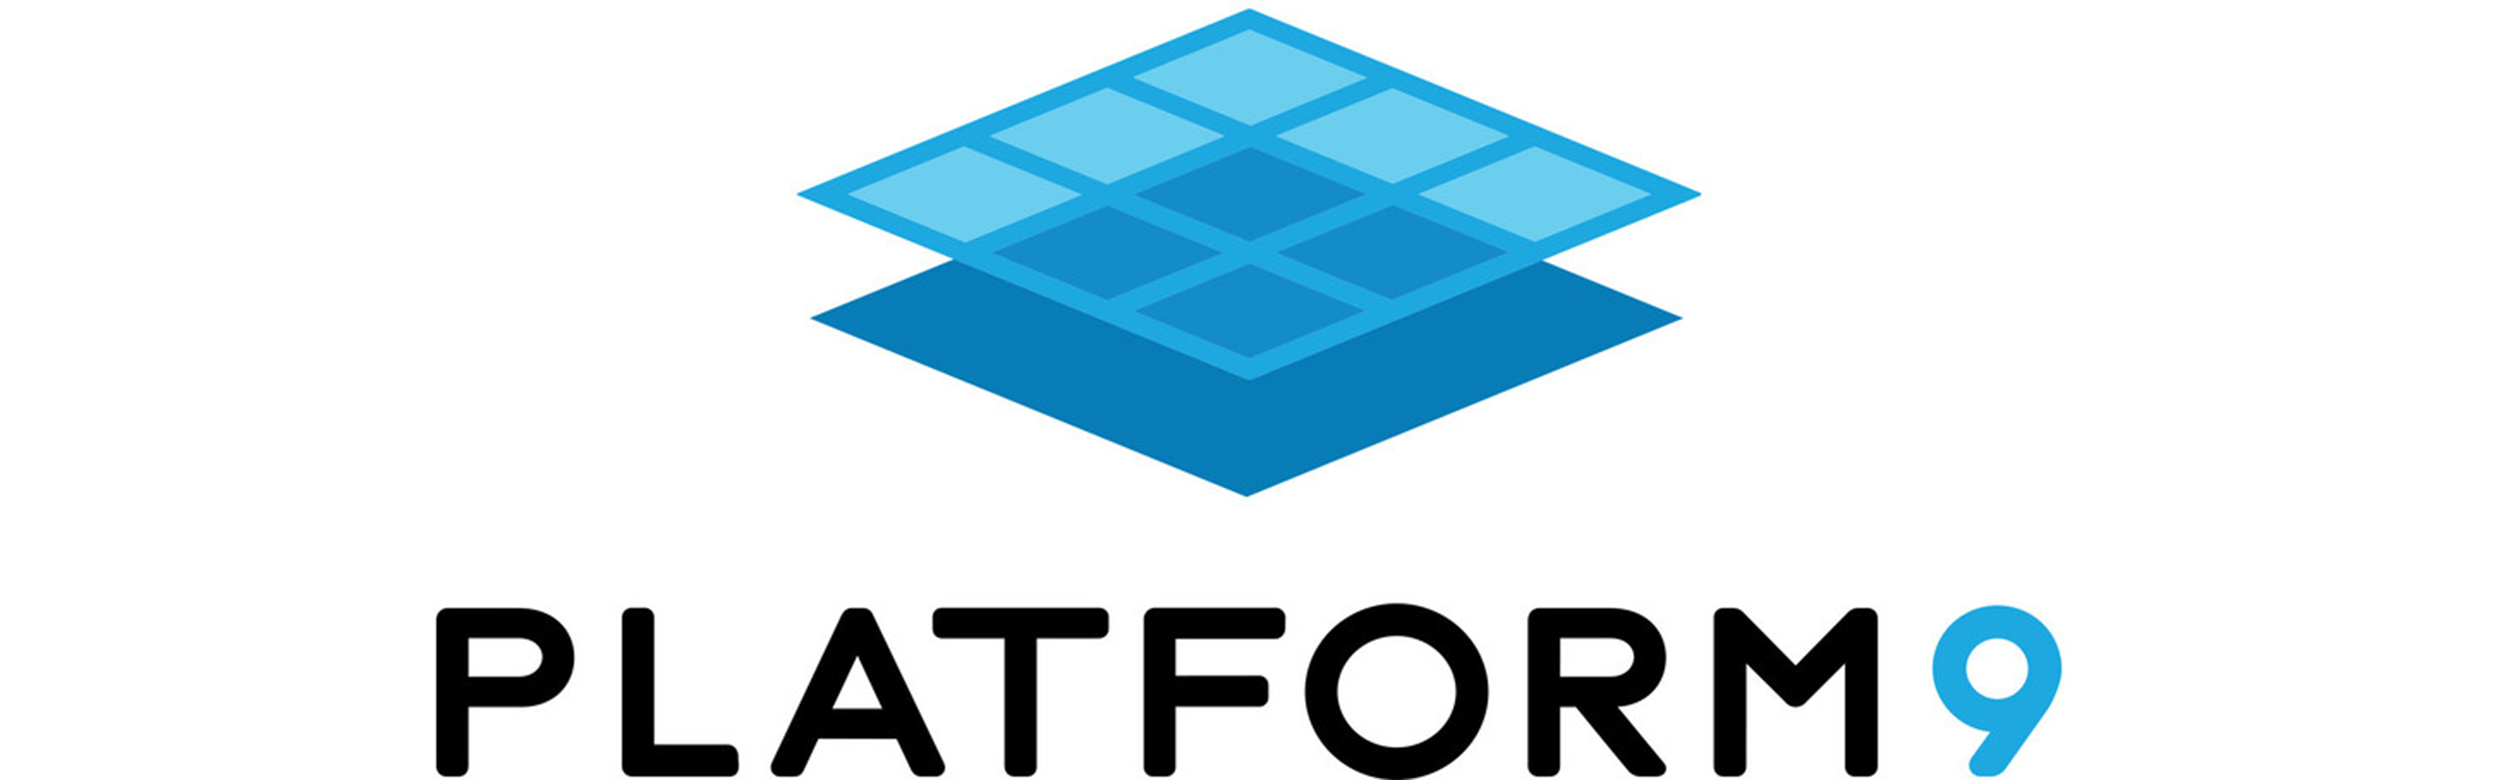 platform9 logo